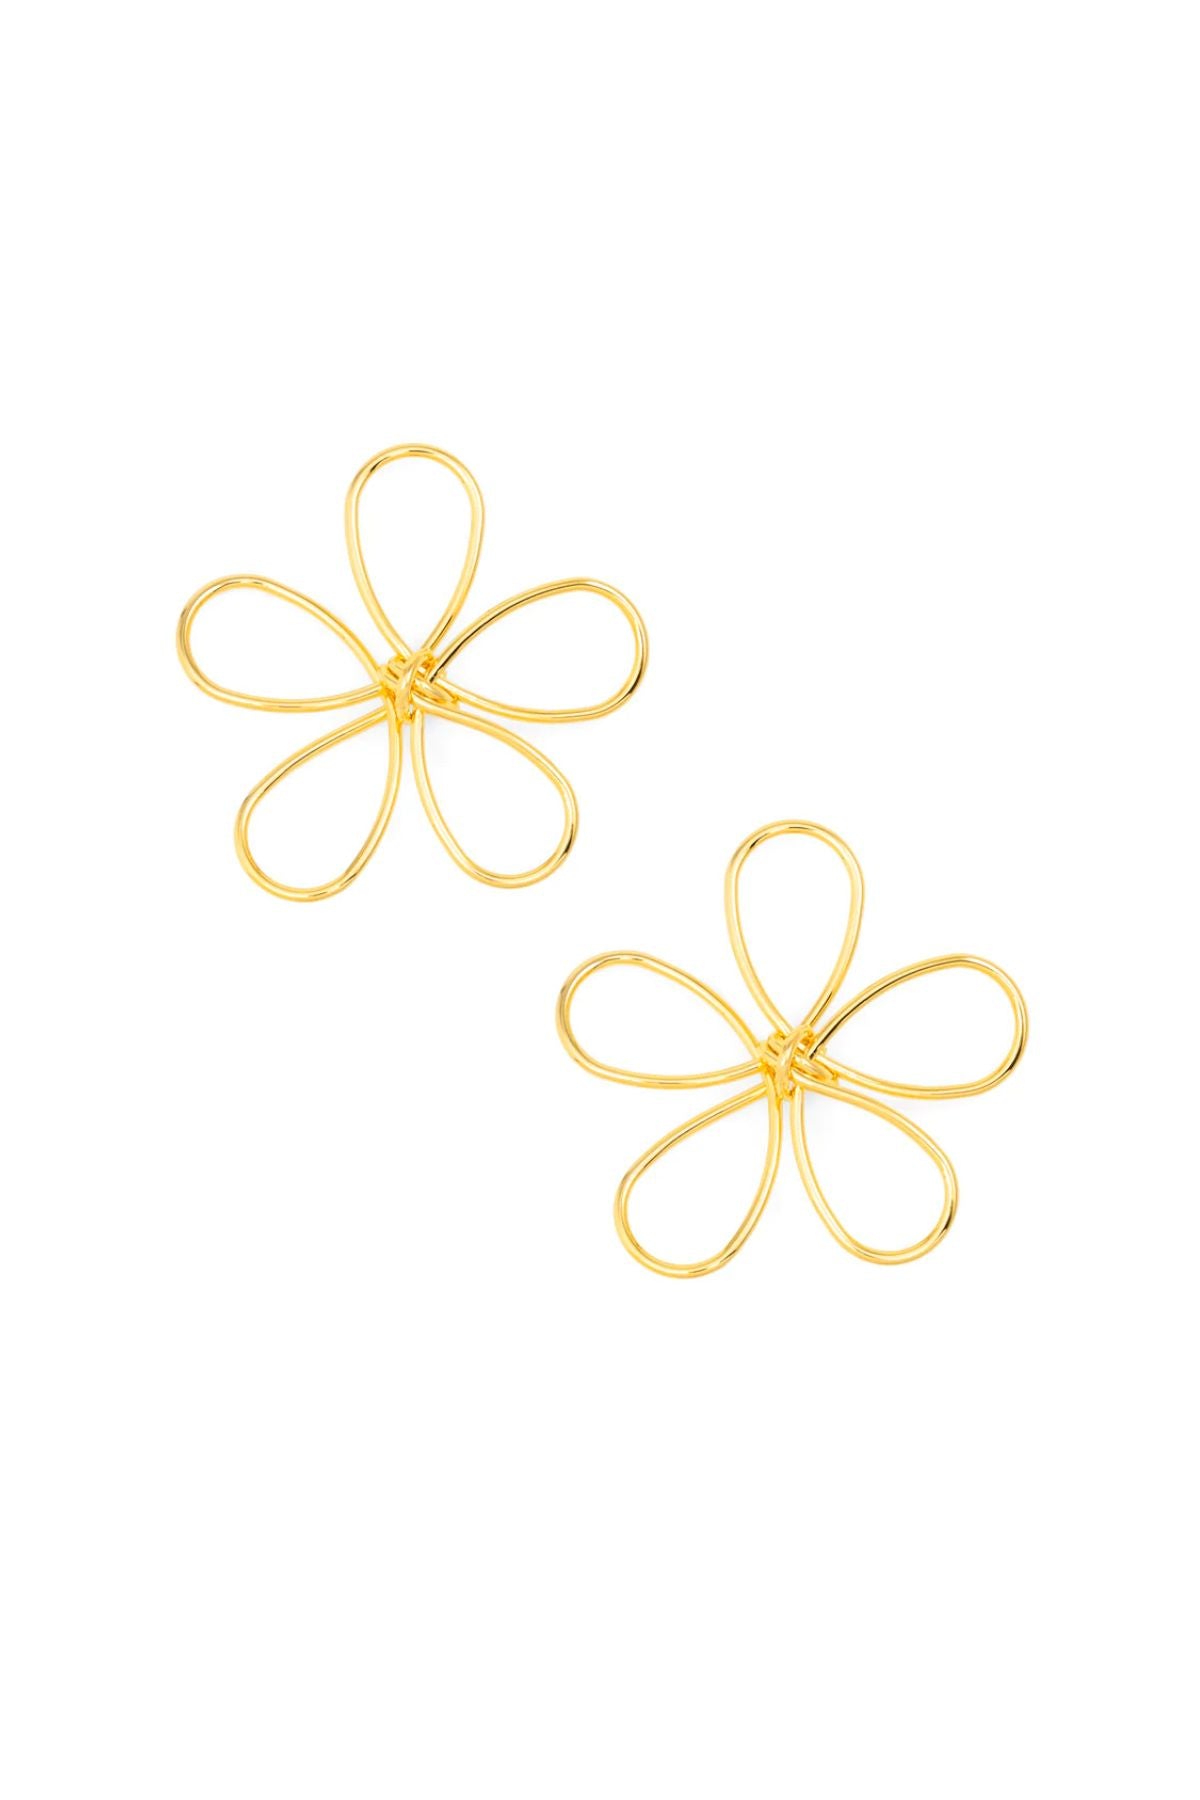 Gold metal looping flower earring